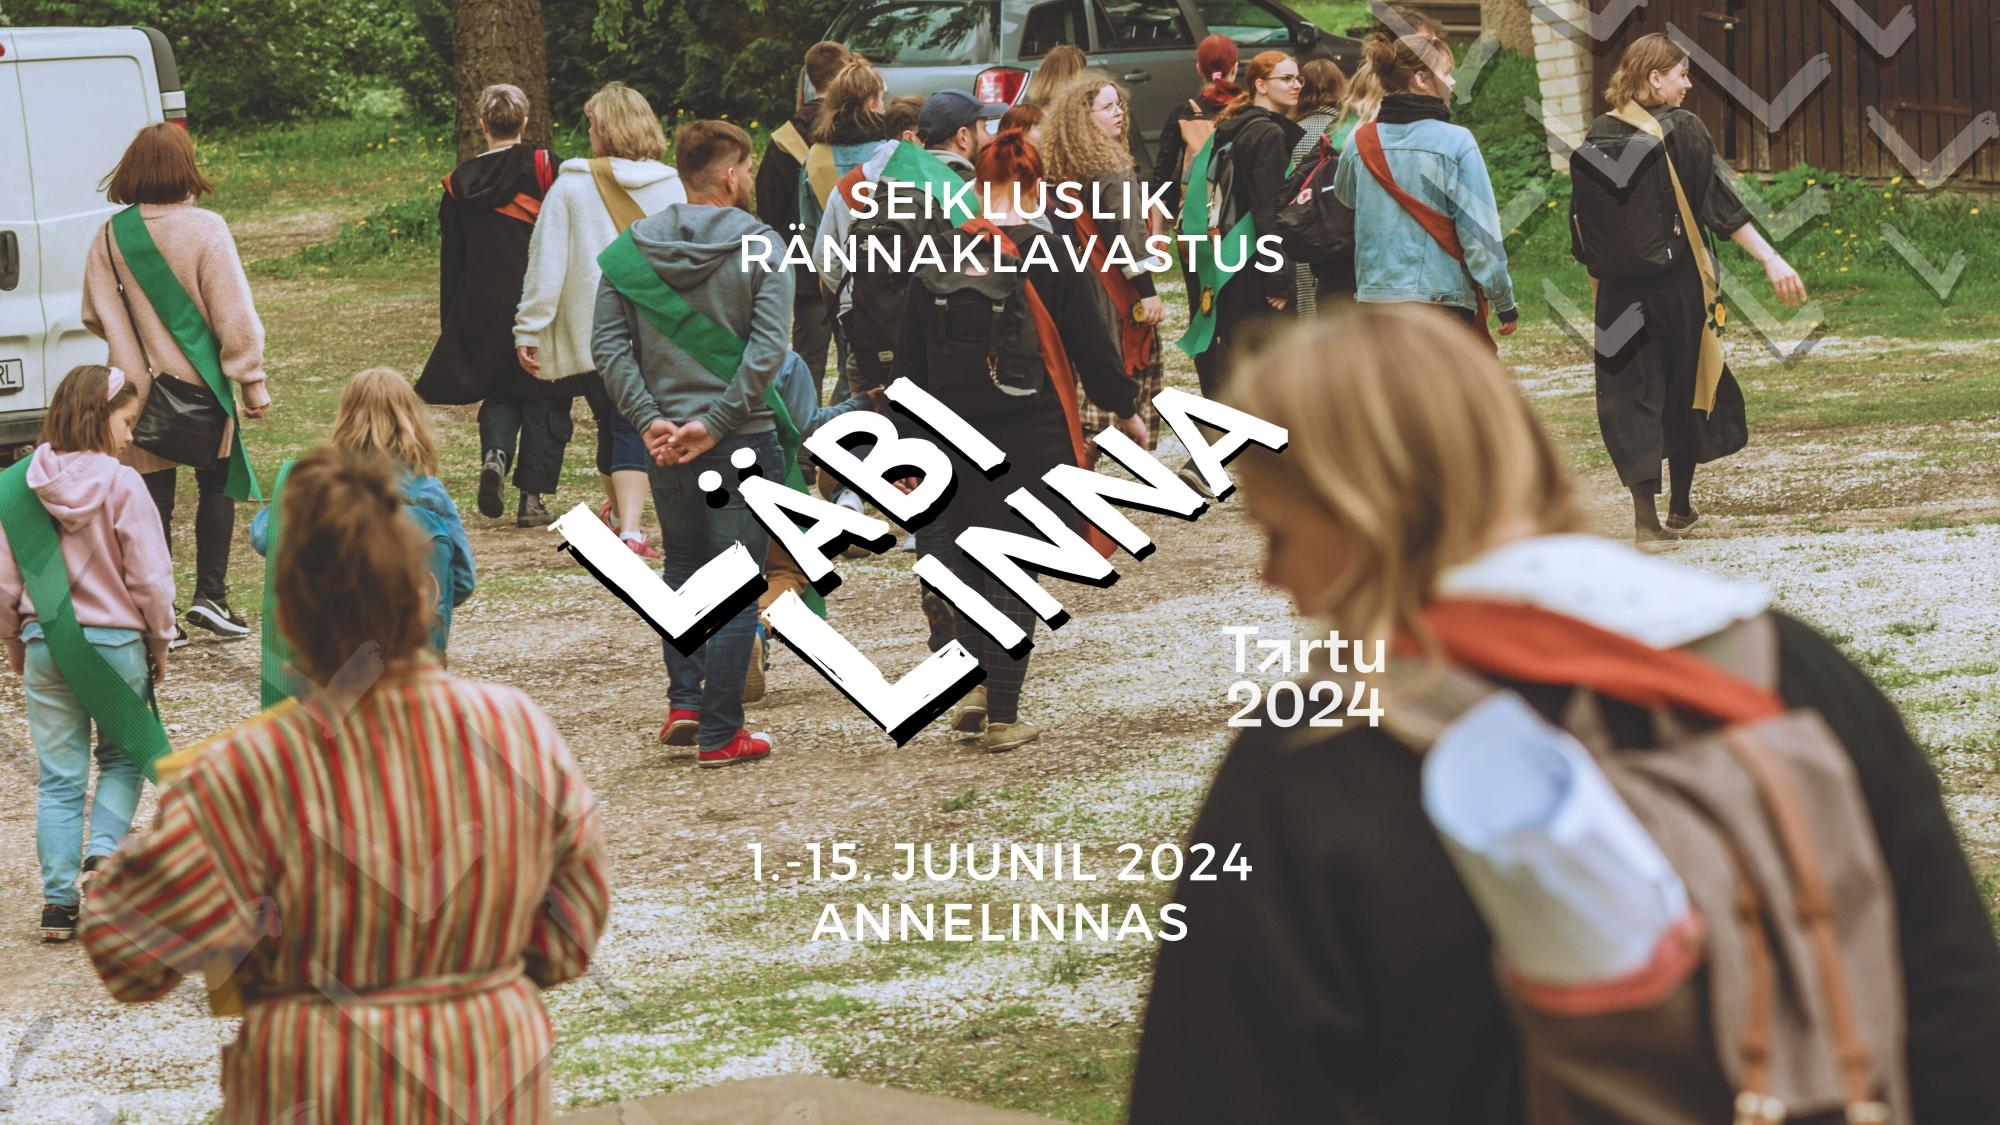 Taustal on foto inimeste grupist rohealal jalutamas. Fotol on kirjas "Seikluslik rännaklavastus LÄBI LINNA / Tartu 2024 / 1.-15. juunil 2024 Annelinnas".